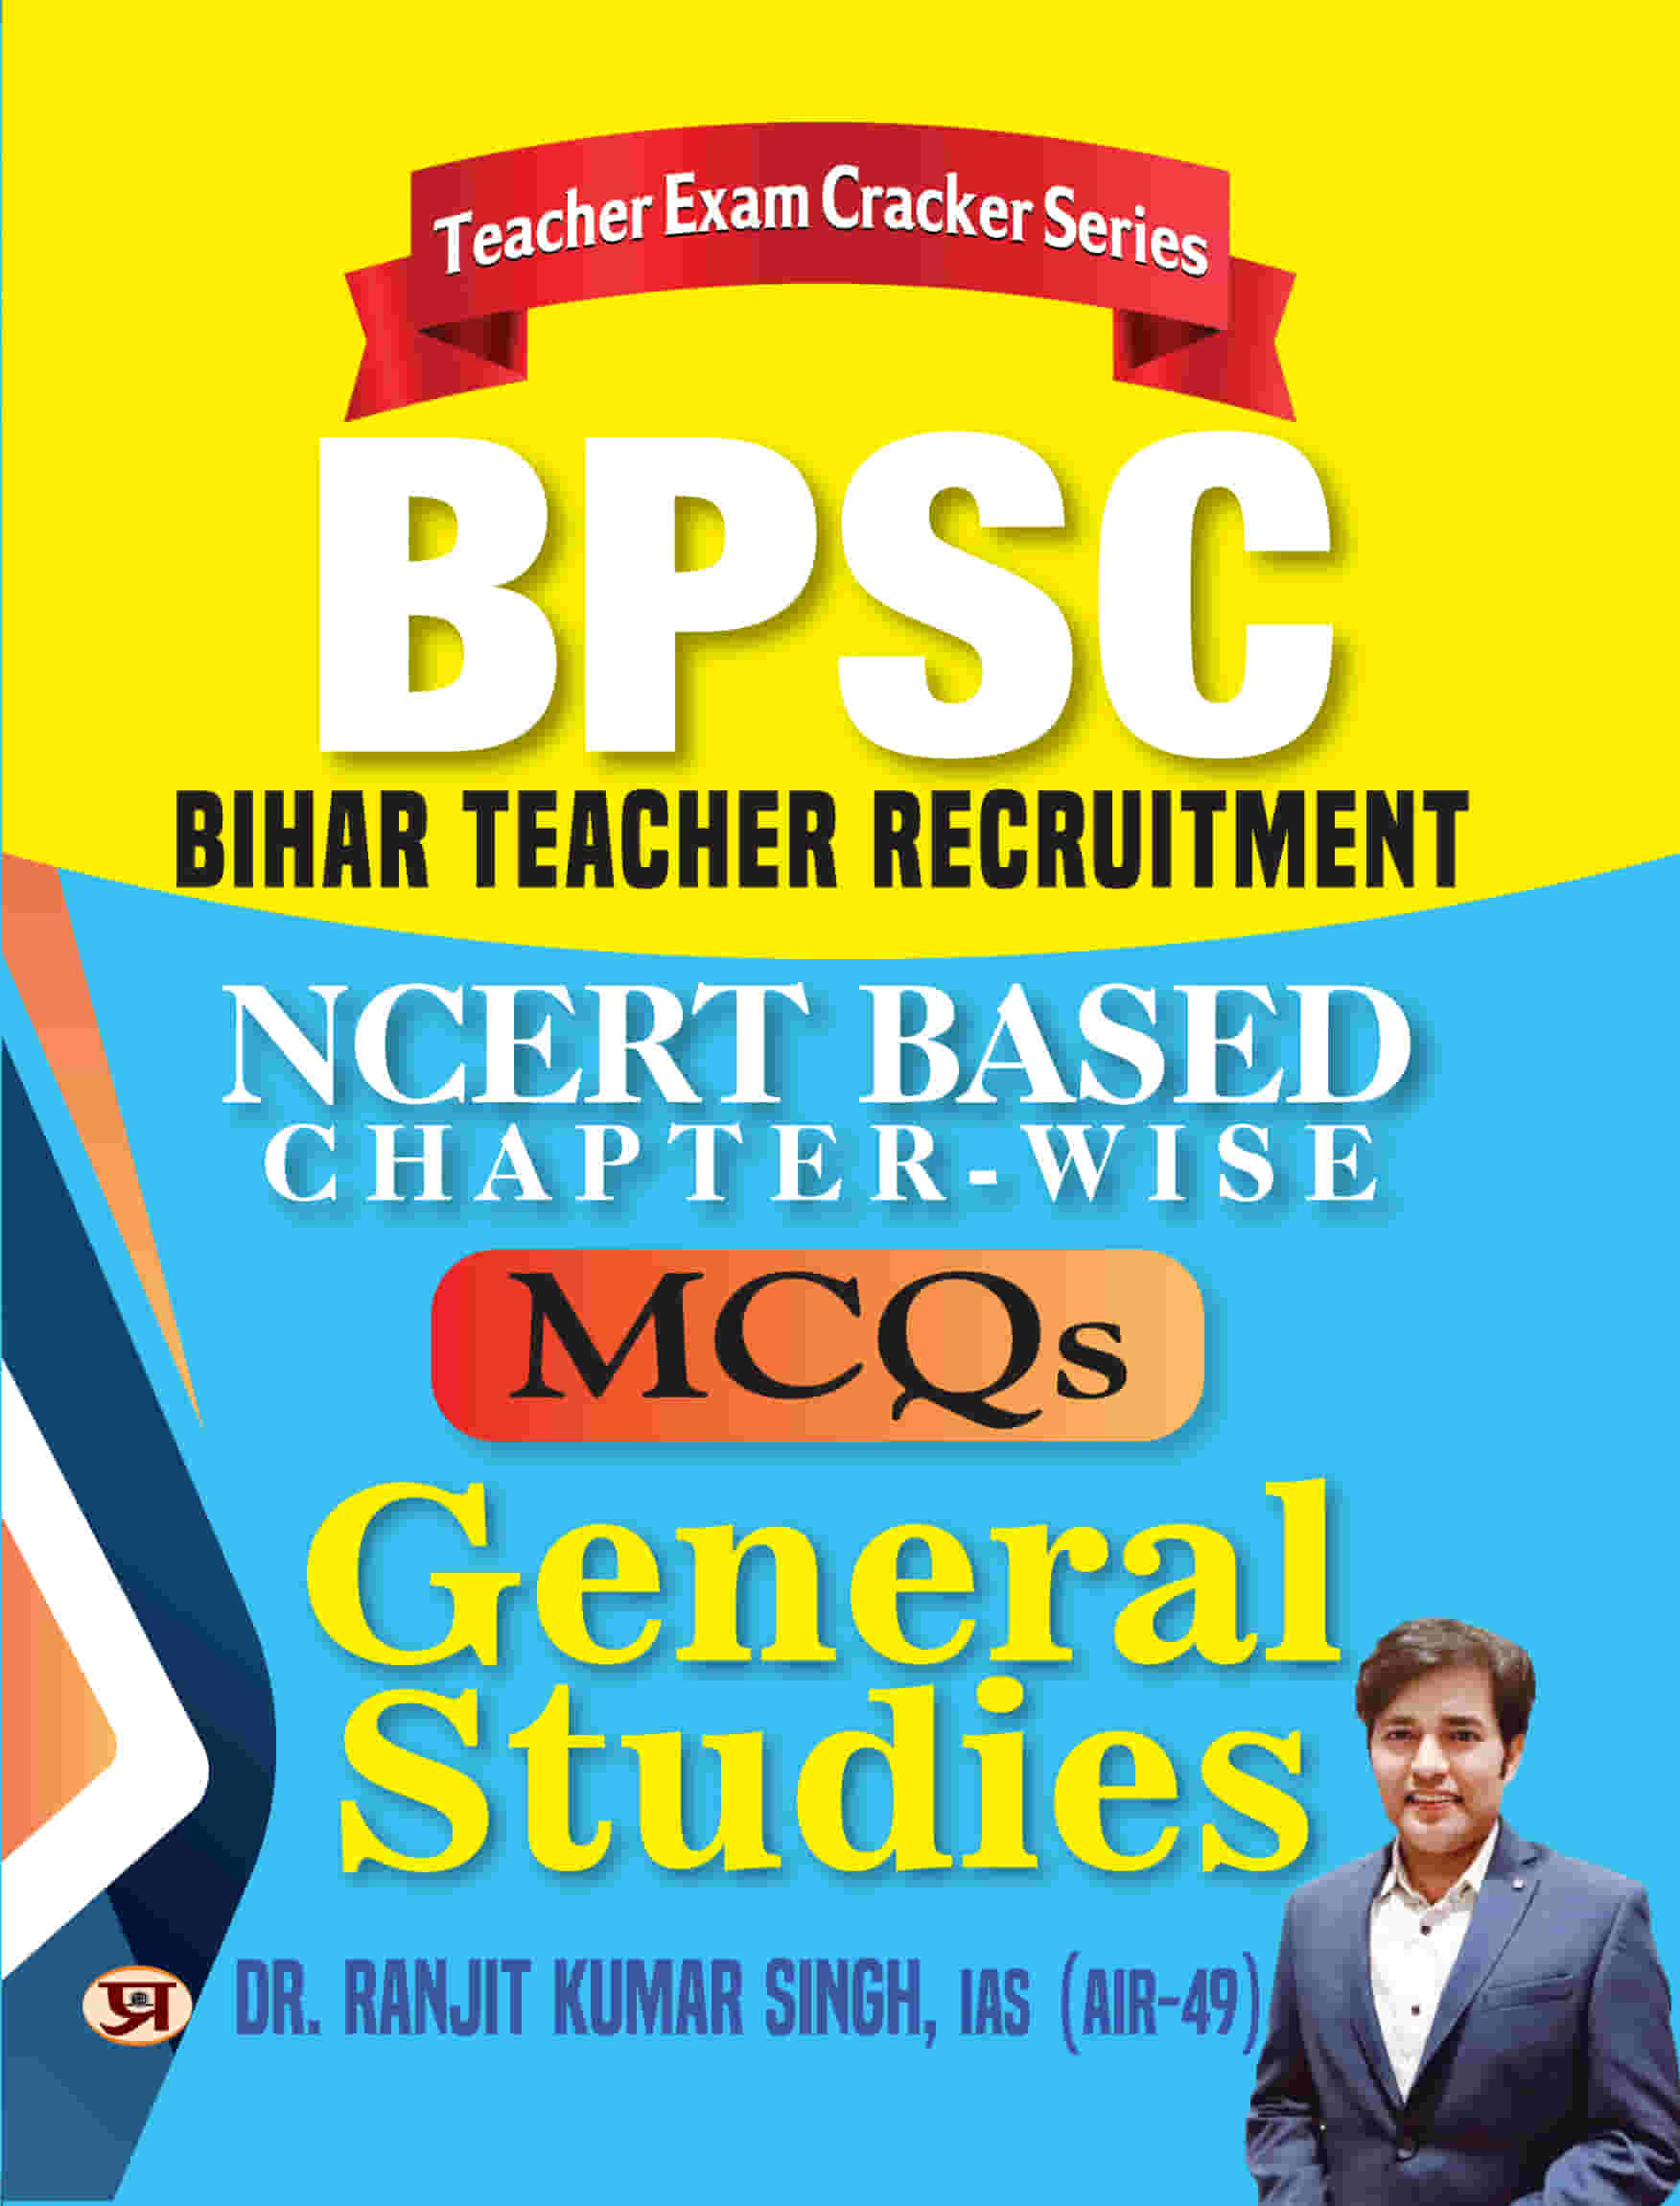 BPSC Bihar Teacher Recruitment NCERT Based (Chapter-wise) MCQs General Studies